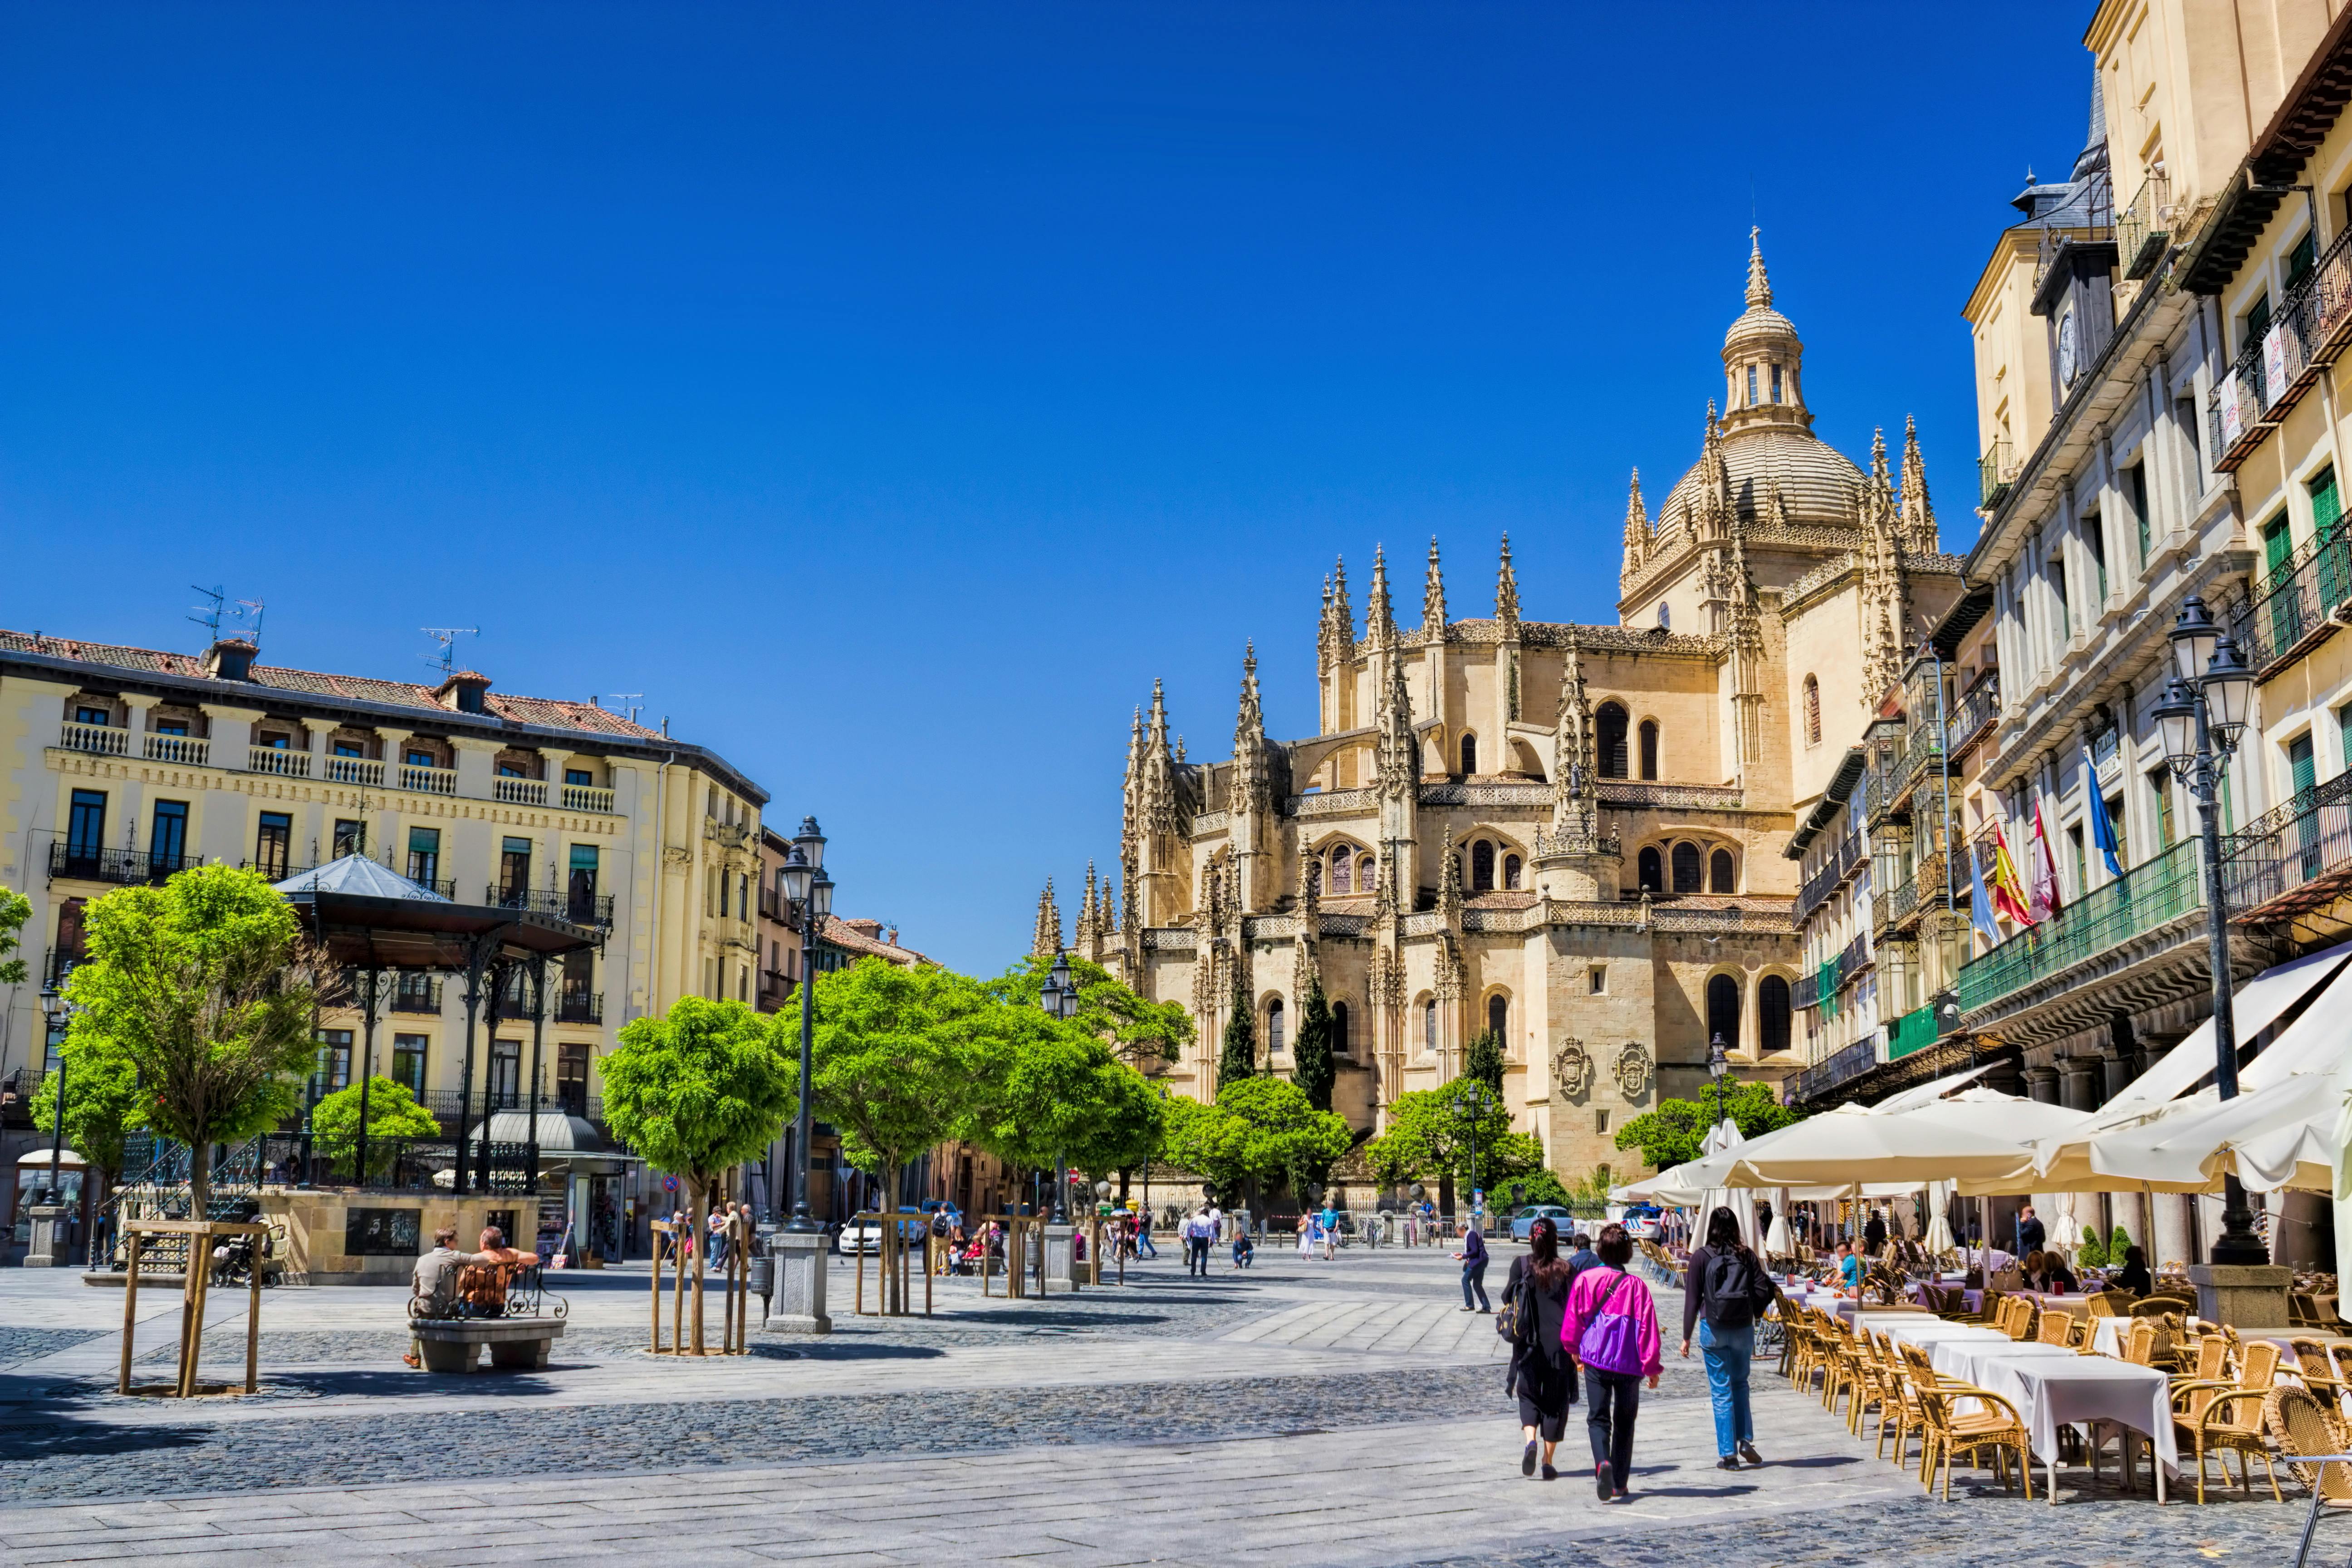 Tour naar Segovia vanuit Madrid inclusief wandeling met gids